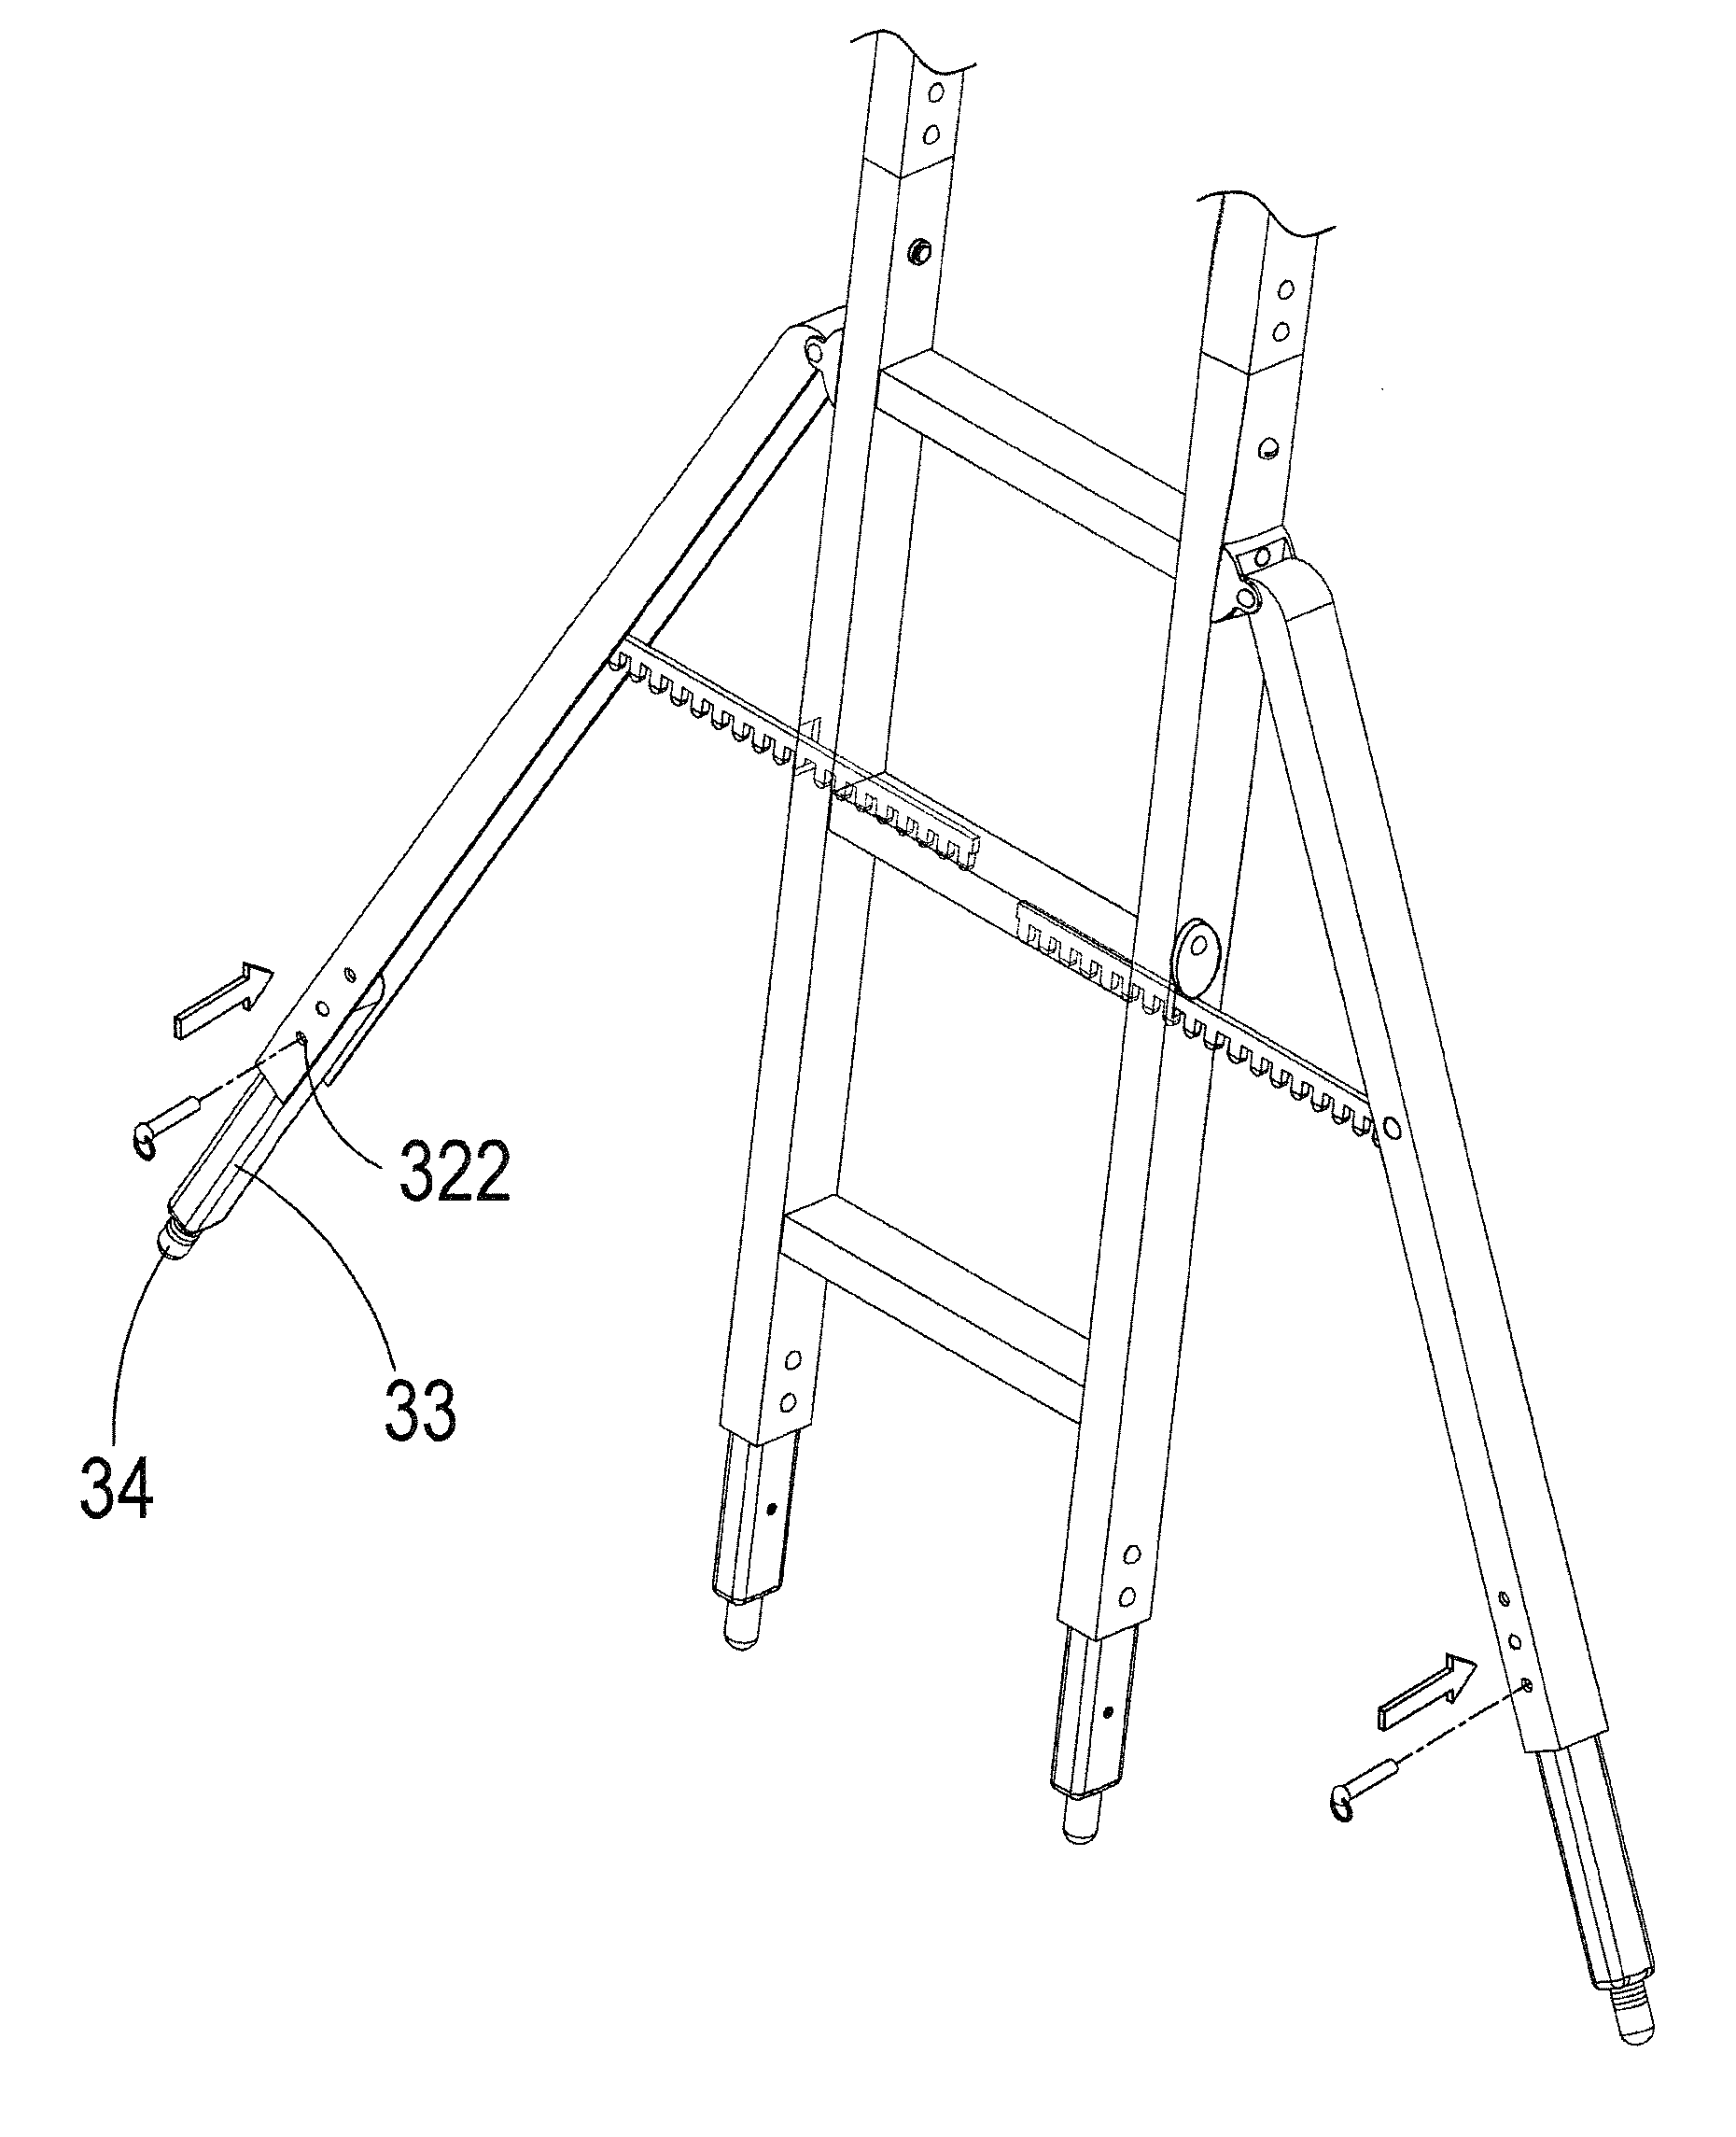 Assembled a-shaped ladder